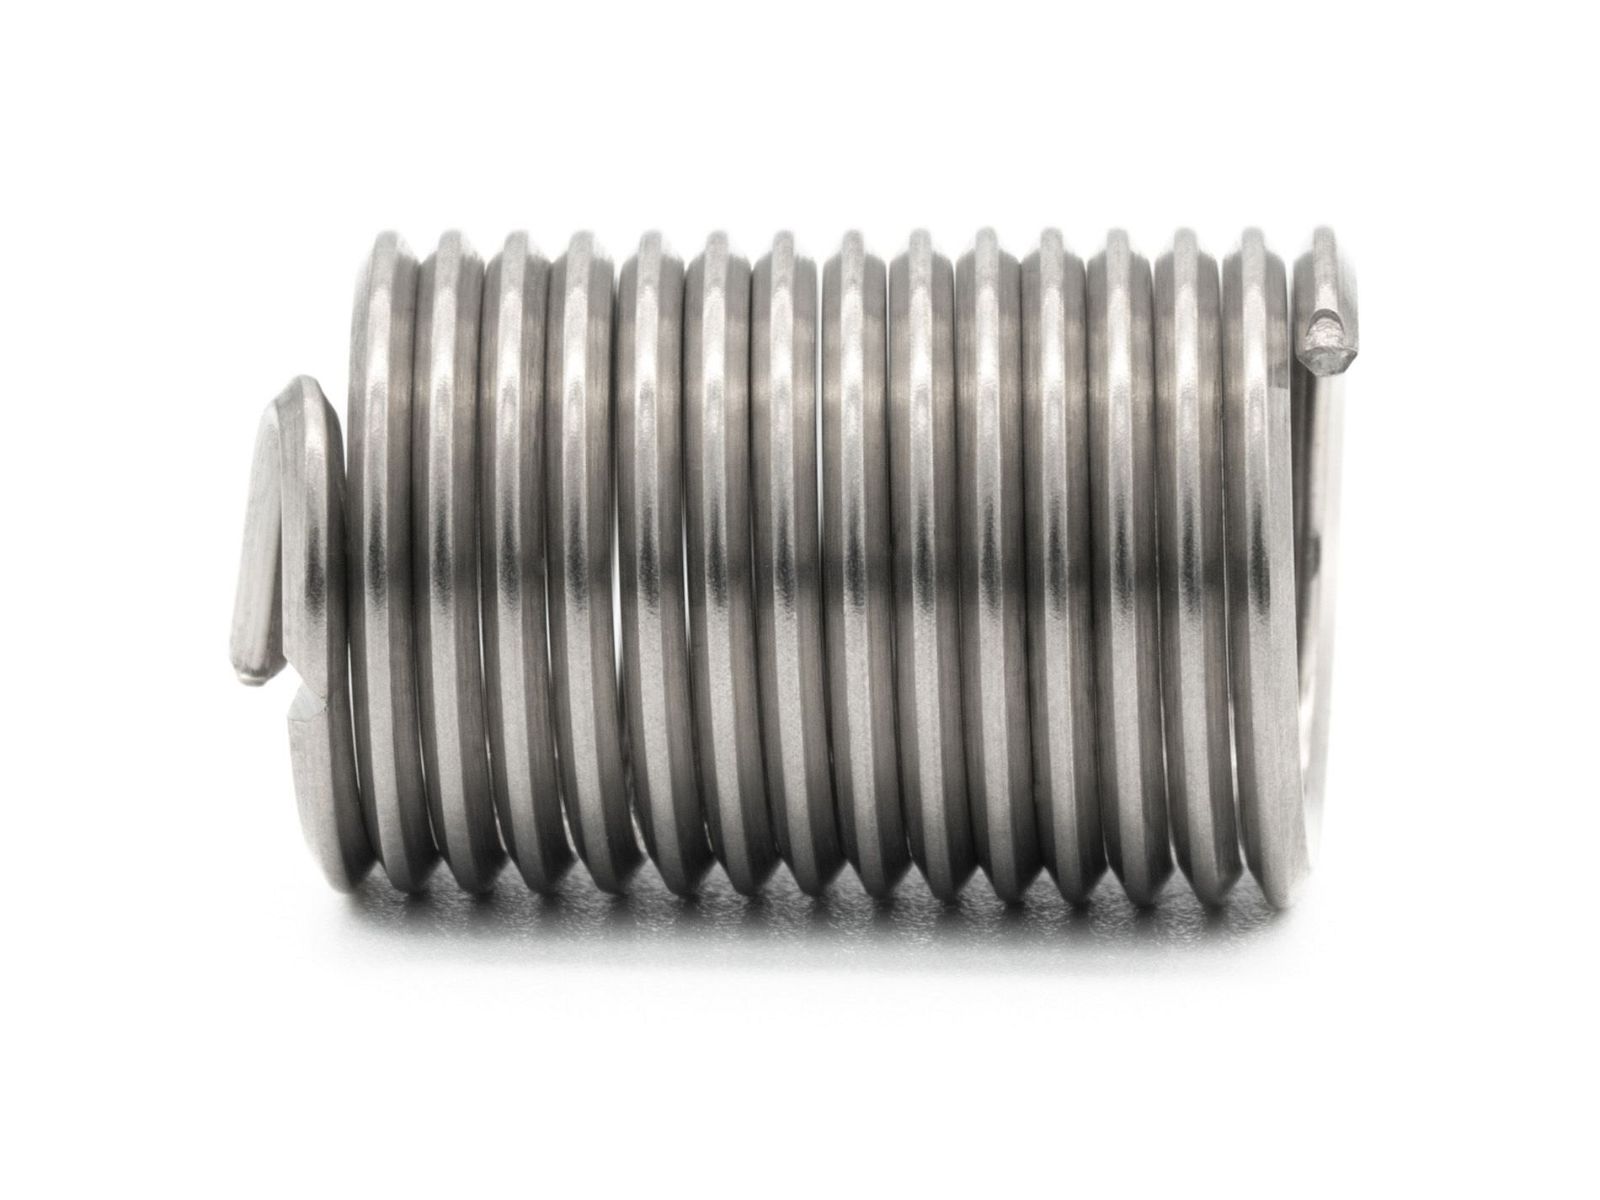 BaerCoil Wire Thread Inserts M 12 x 1,5 - 2,5 D (30 mm) - free running - 10 pcs.